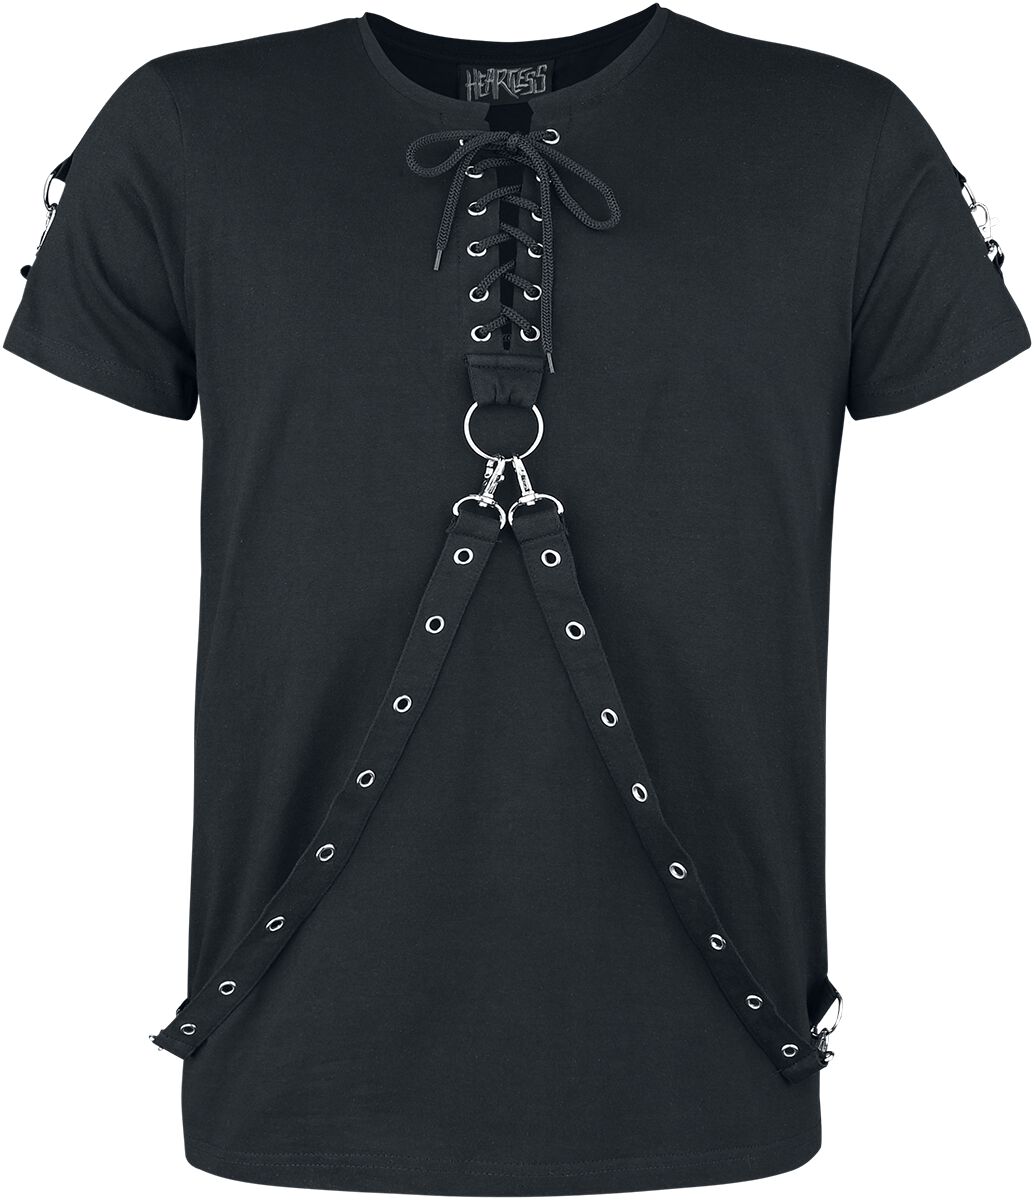 Heartless - Gothic T-Shirt - Einer Top - S bis 4XL - für Männer - Größe 3XL - schwarz